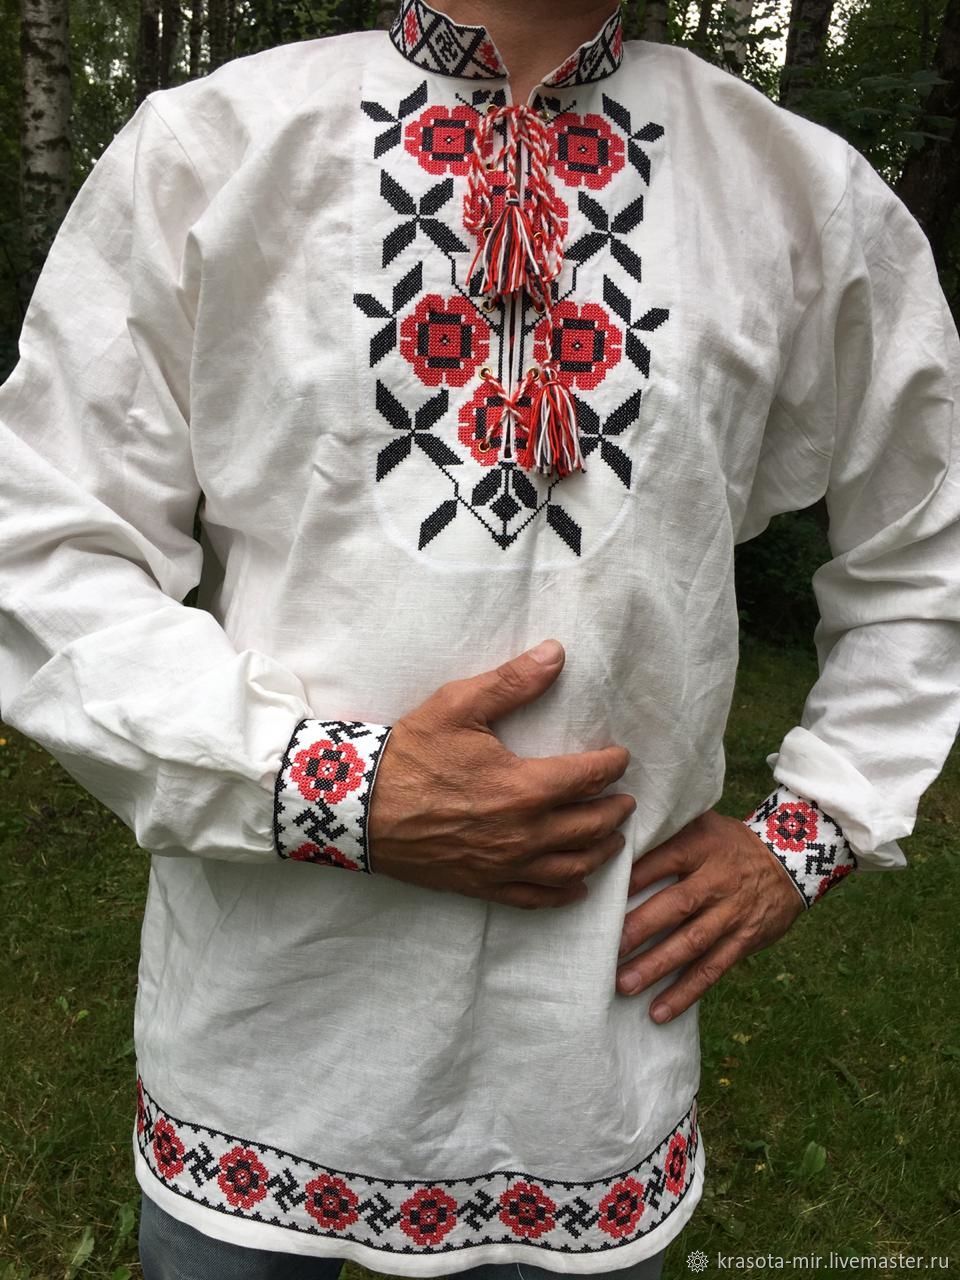 Мужские купить украина. Белорусская рубаха Национальная белорусская. Вышиванка. Украинская Национальная рубашка. Рубаха с вышивкой.